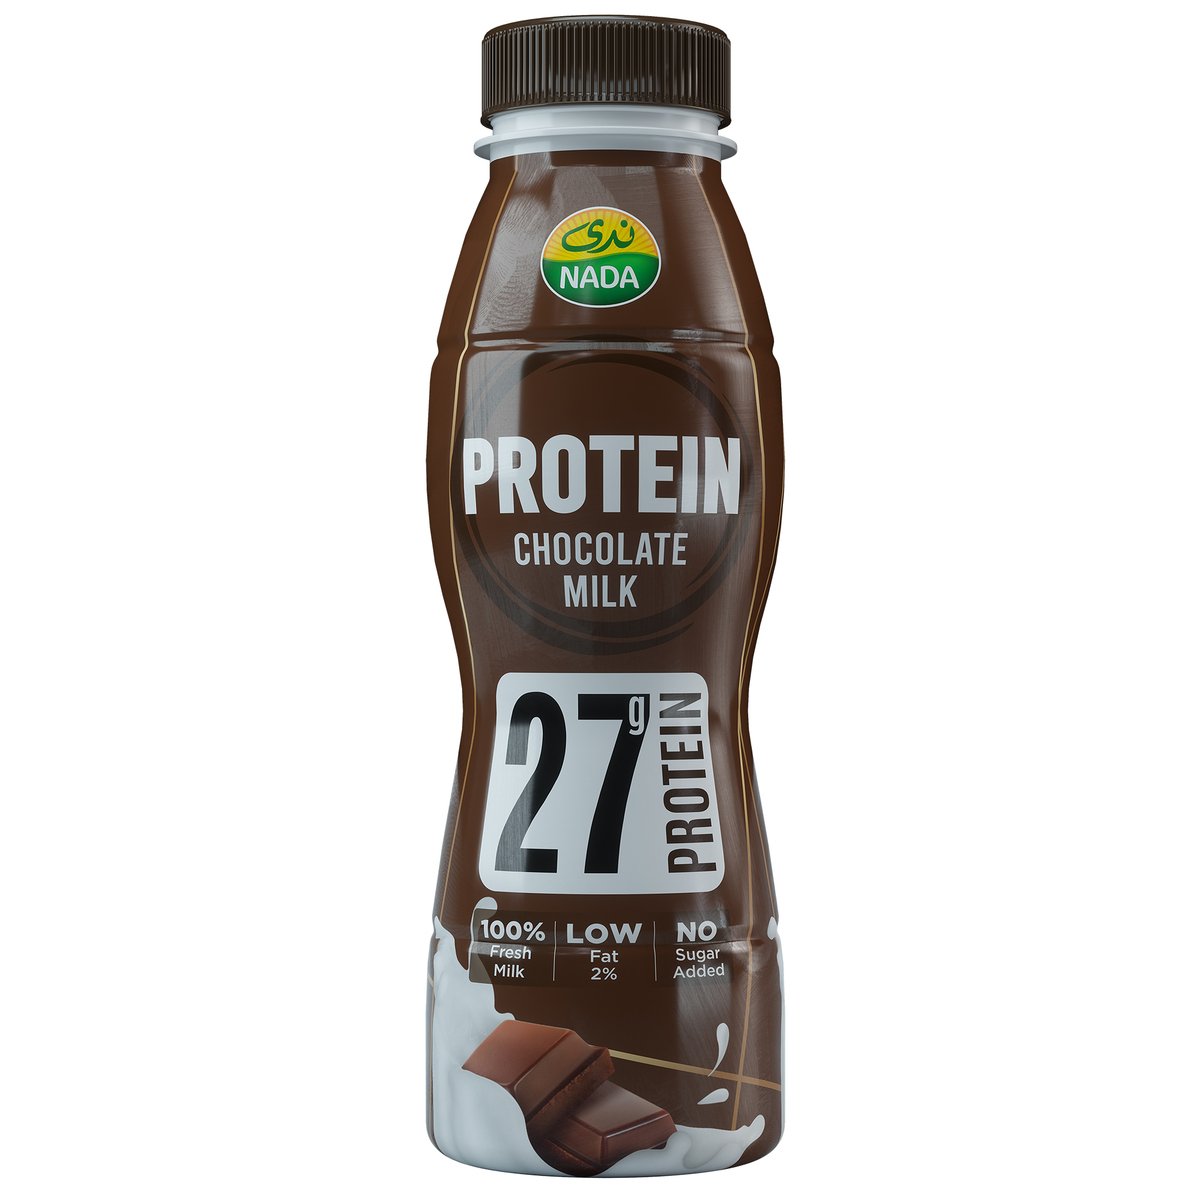 اشتري قم بشراء ندى بروتين حليب الشوكولاتة 320 مل Online at Best Price من الموقع - من لولو هايبر ماركت Flavoured Milk في السعودية